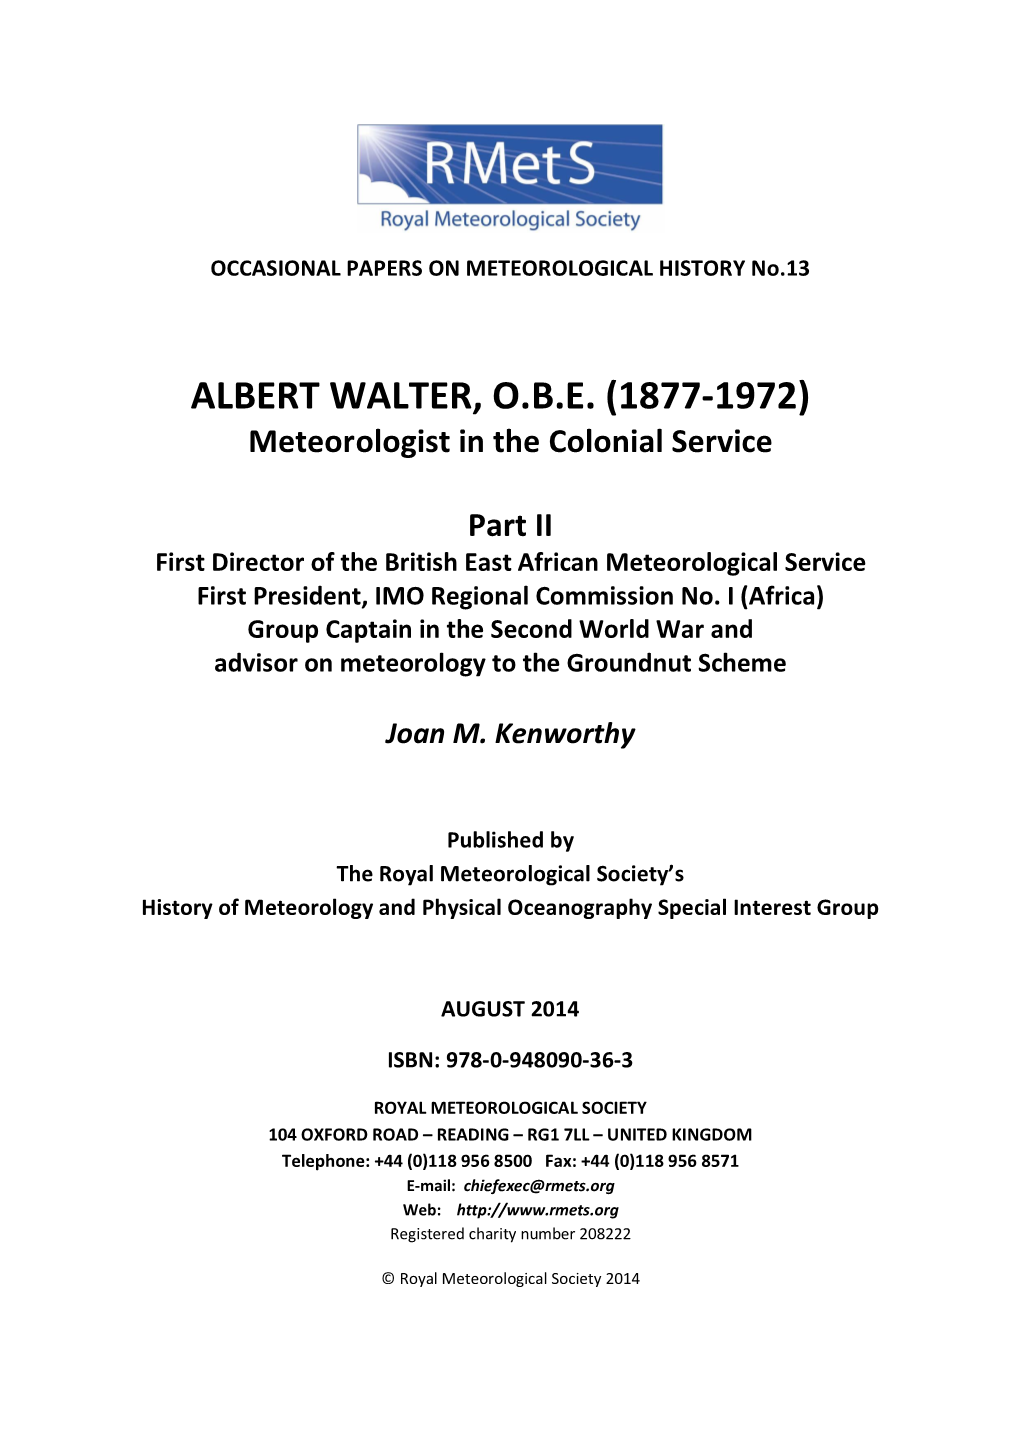 Albert Walter, O.B.E